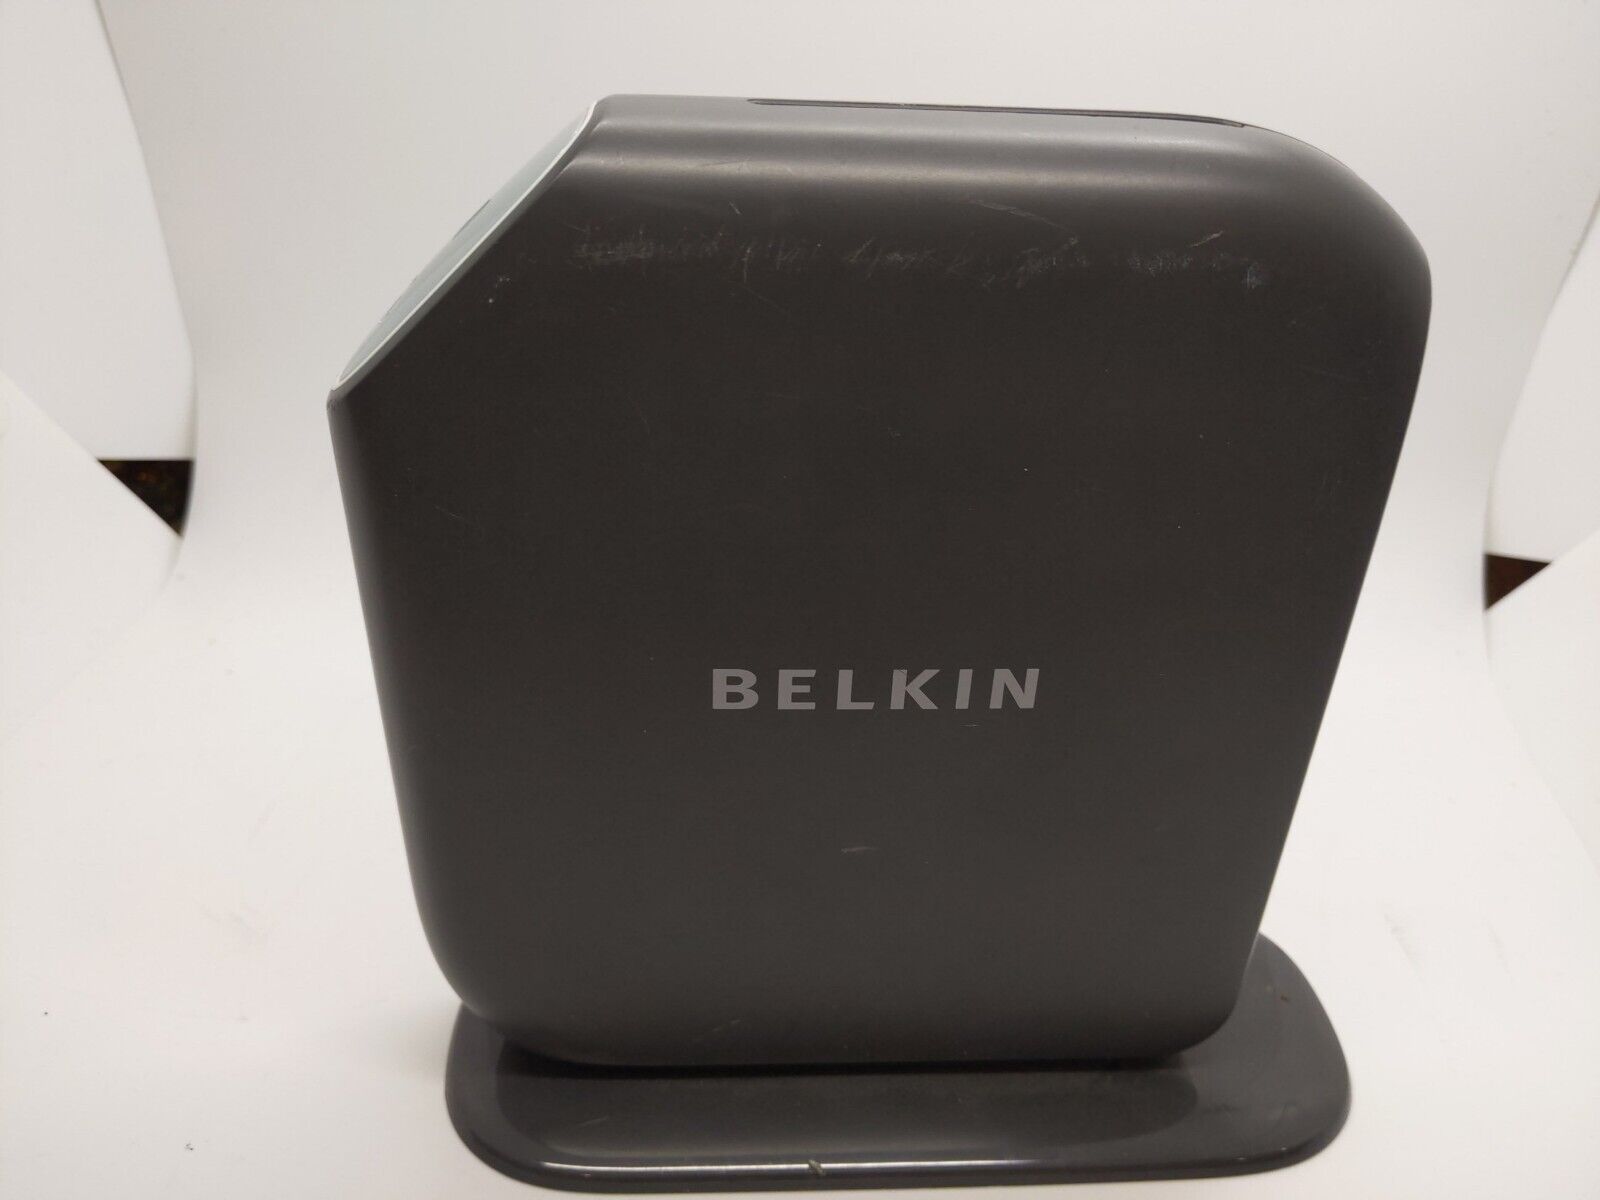 Belkin Share Wireless Router #F7D3302